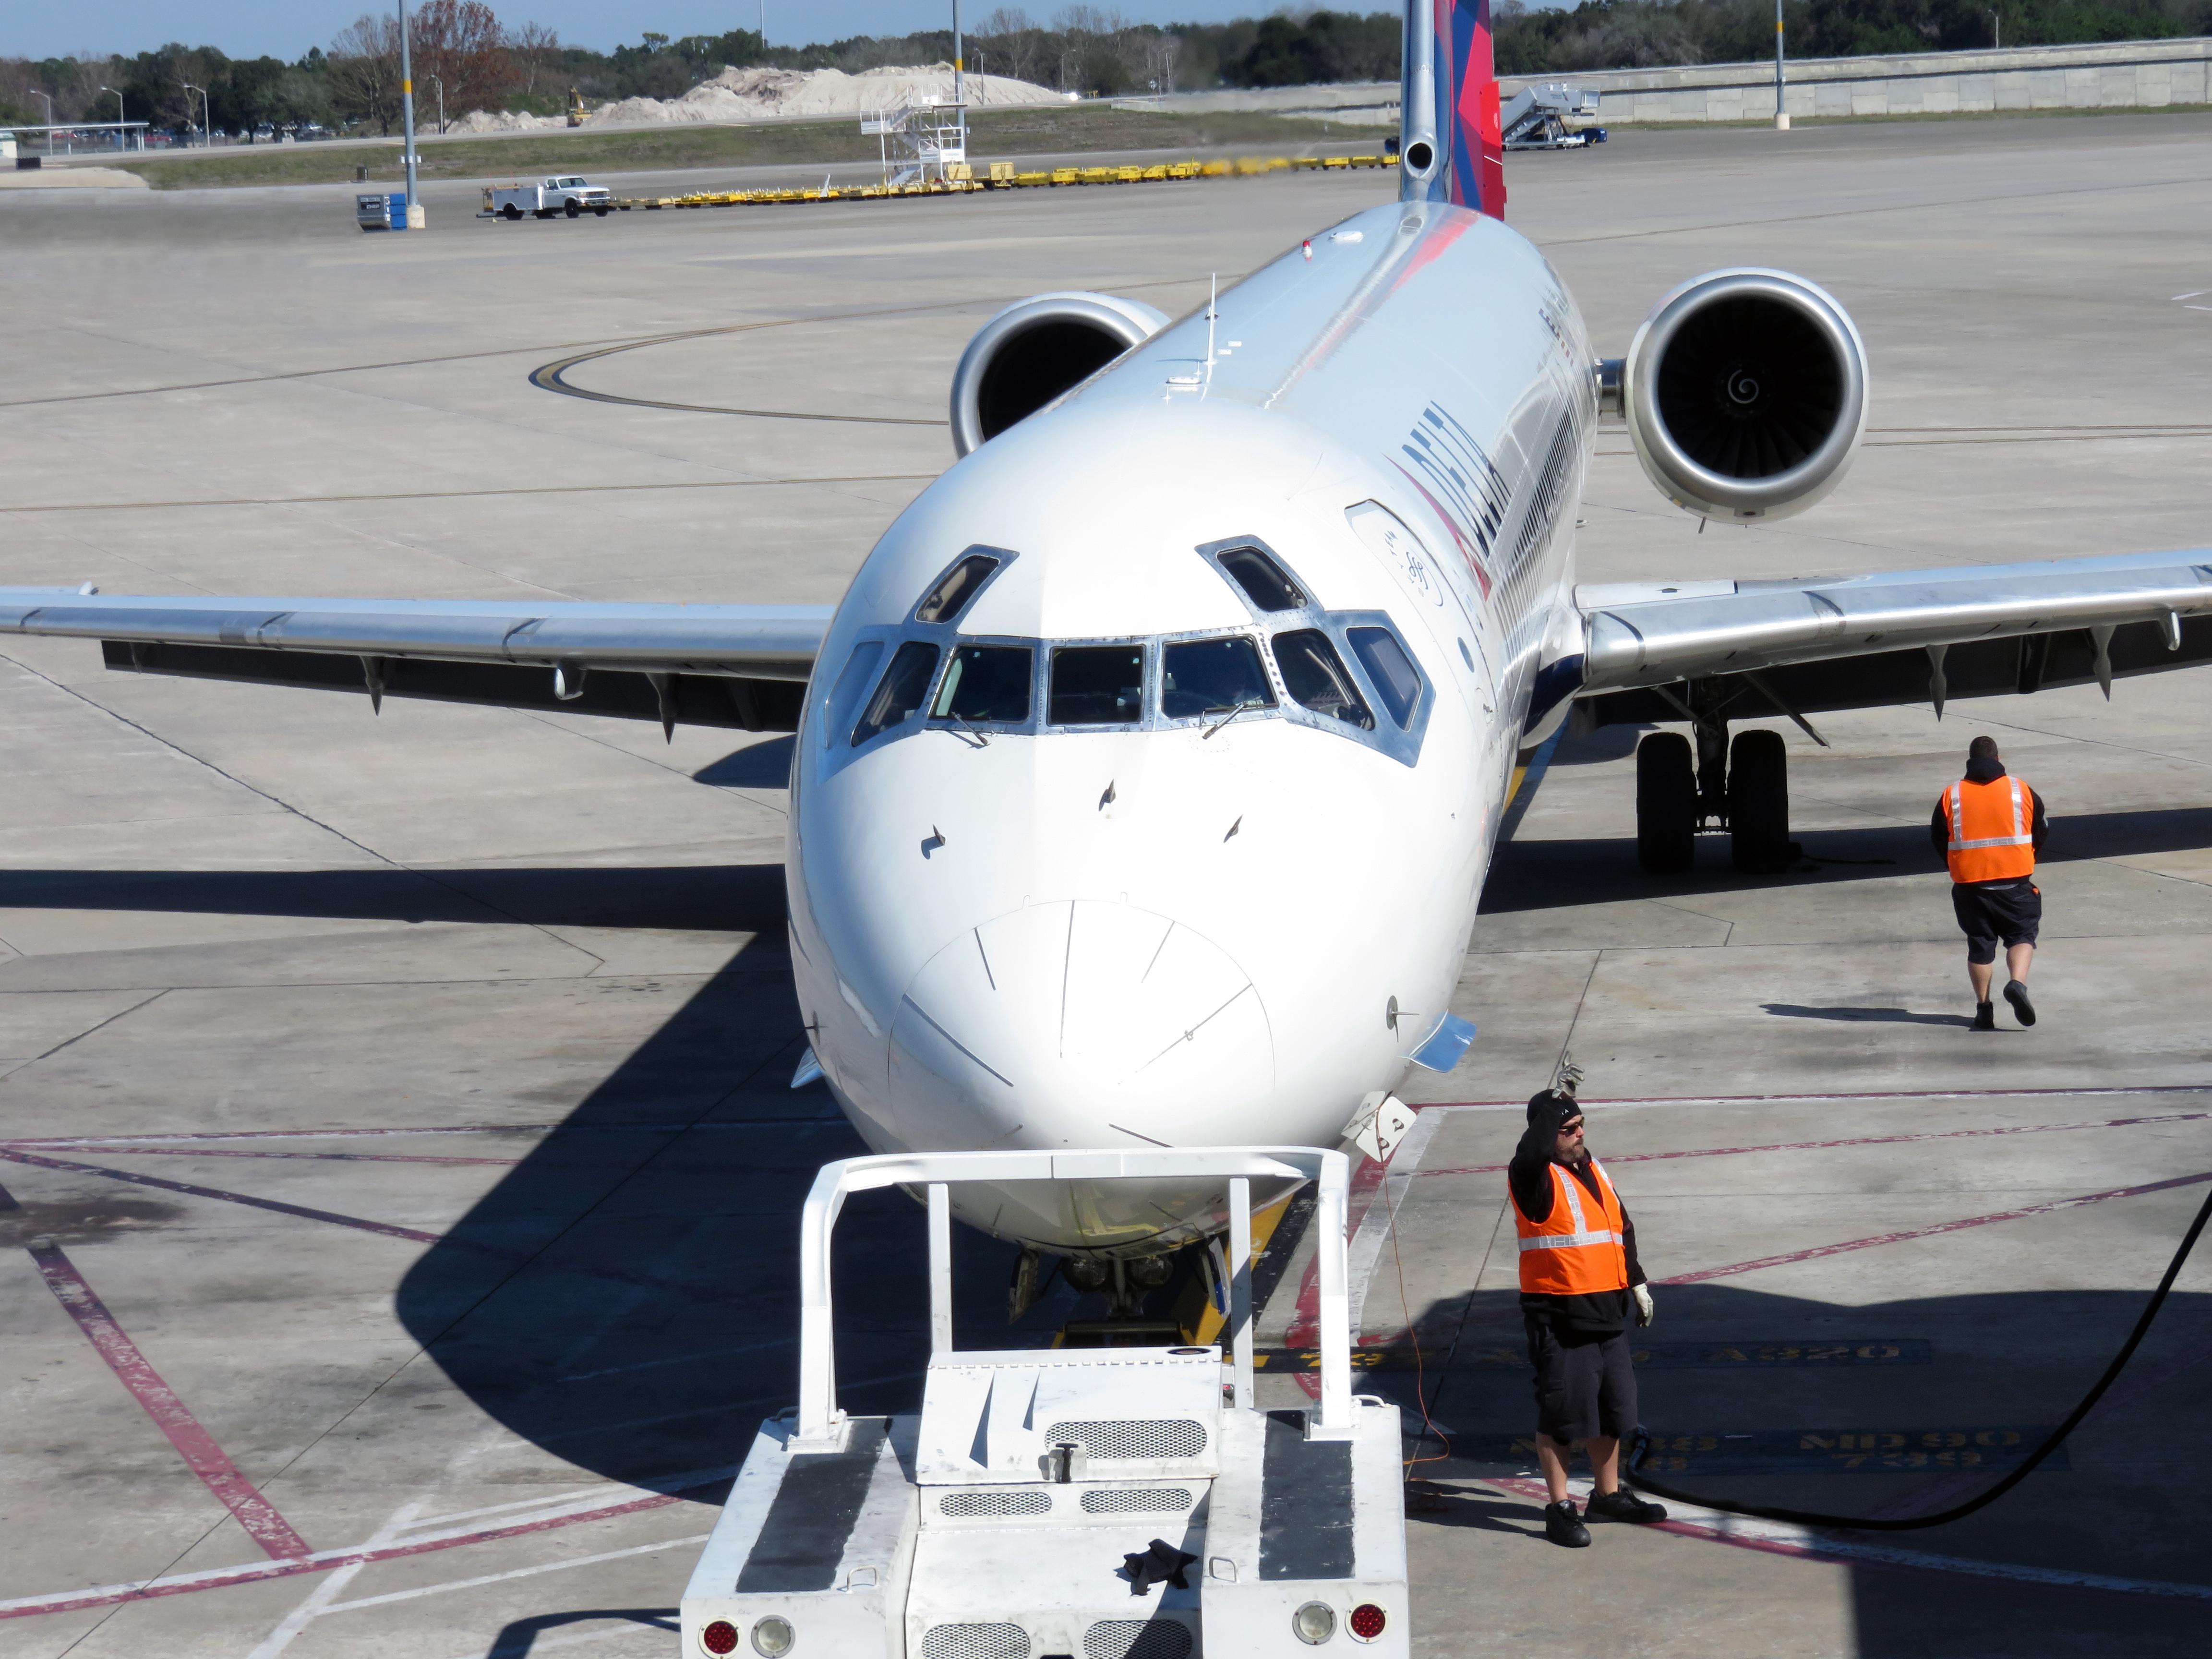 Delta Airlines contratará a 25.000 trabajadores